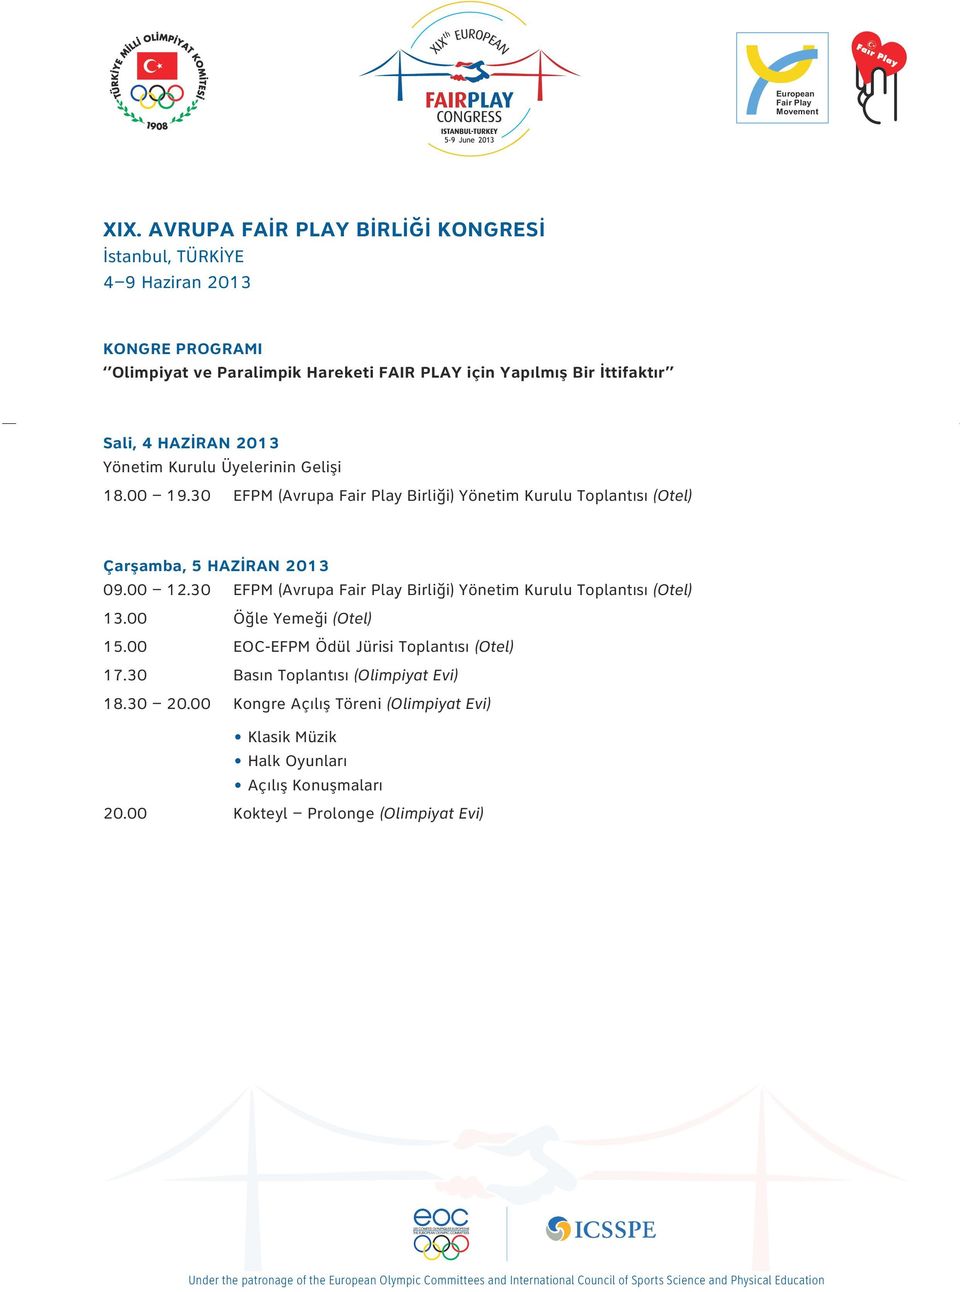 30 EFPM (Avrupa Birliği) Yönetim Kurulu Toplantısı (Otel) Çarşamba, 5 HAZİRAN 2013 09.00 12.30 EFPM (Avrupa Birliği) Yönetim Kurulu Toplantısı (Otel) 13.